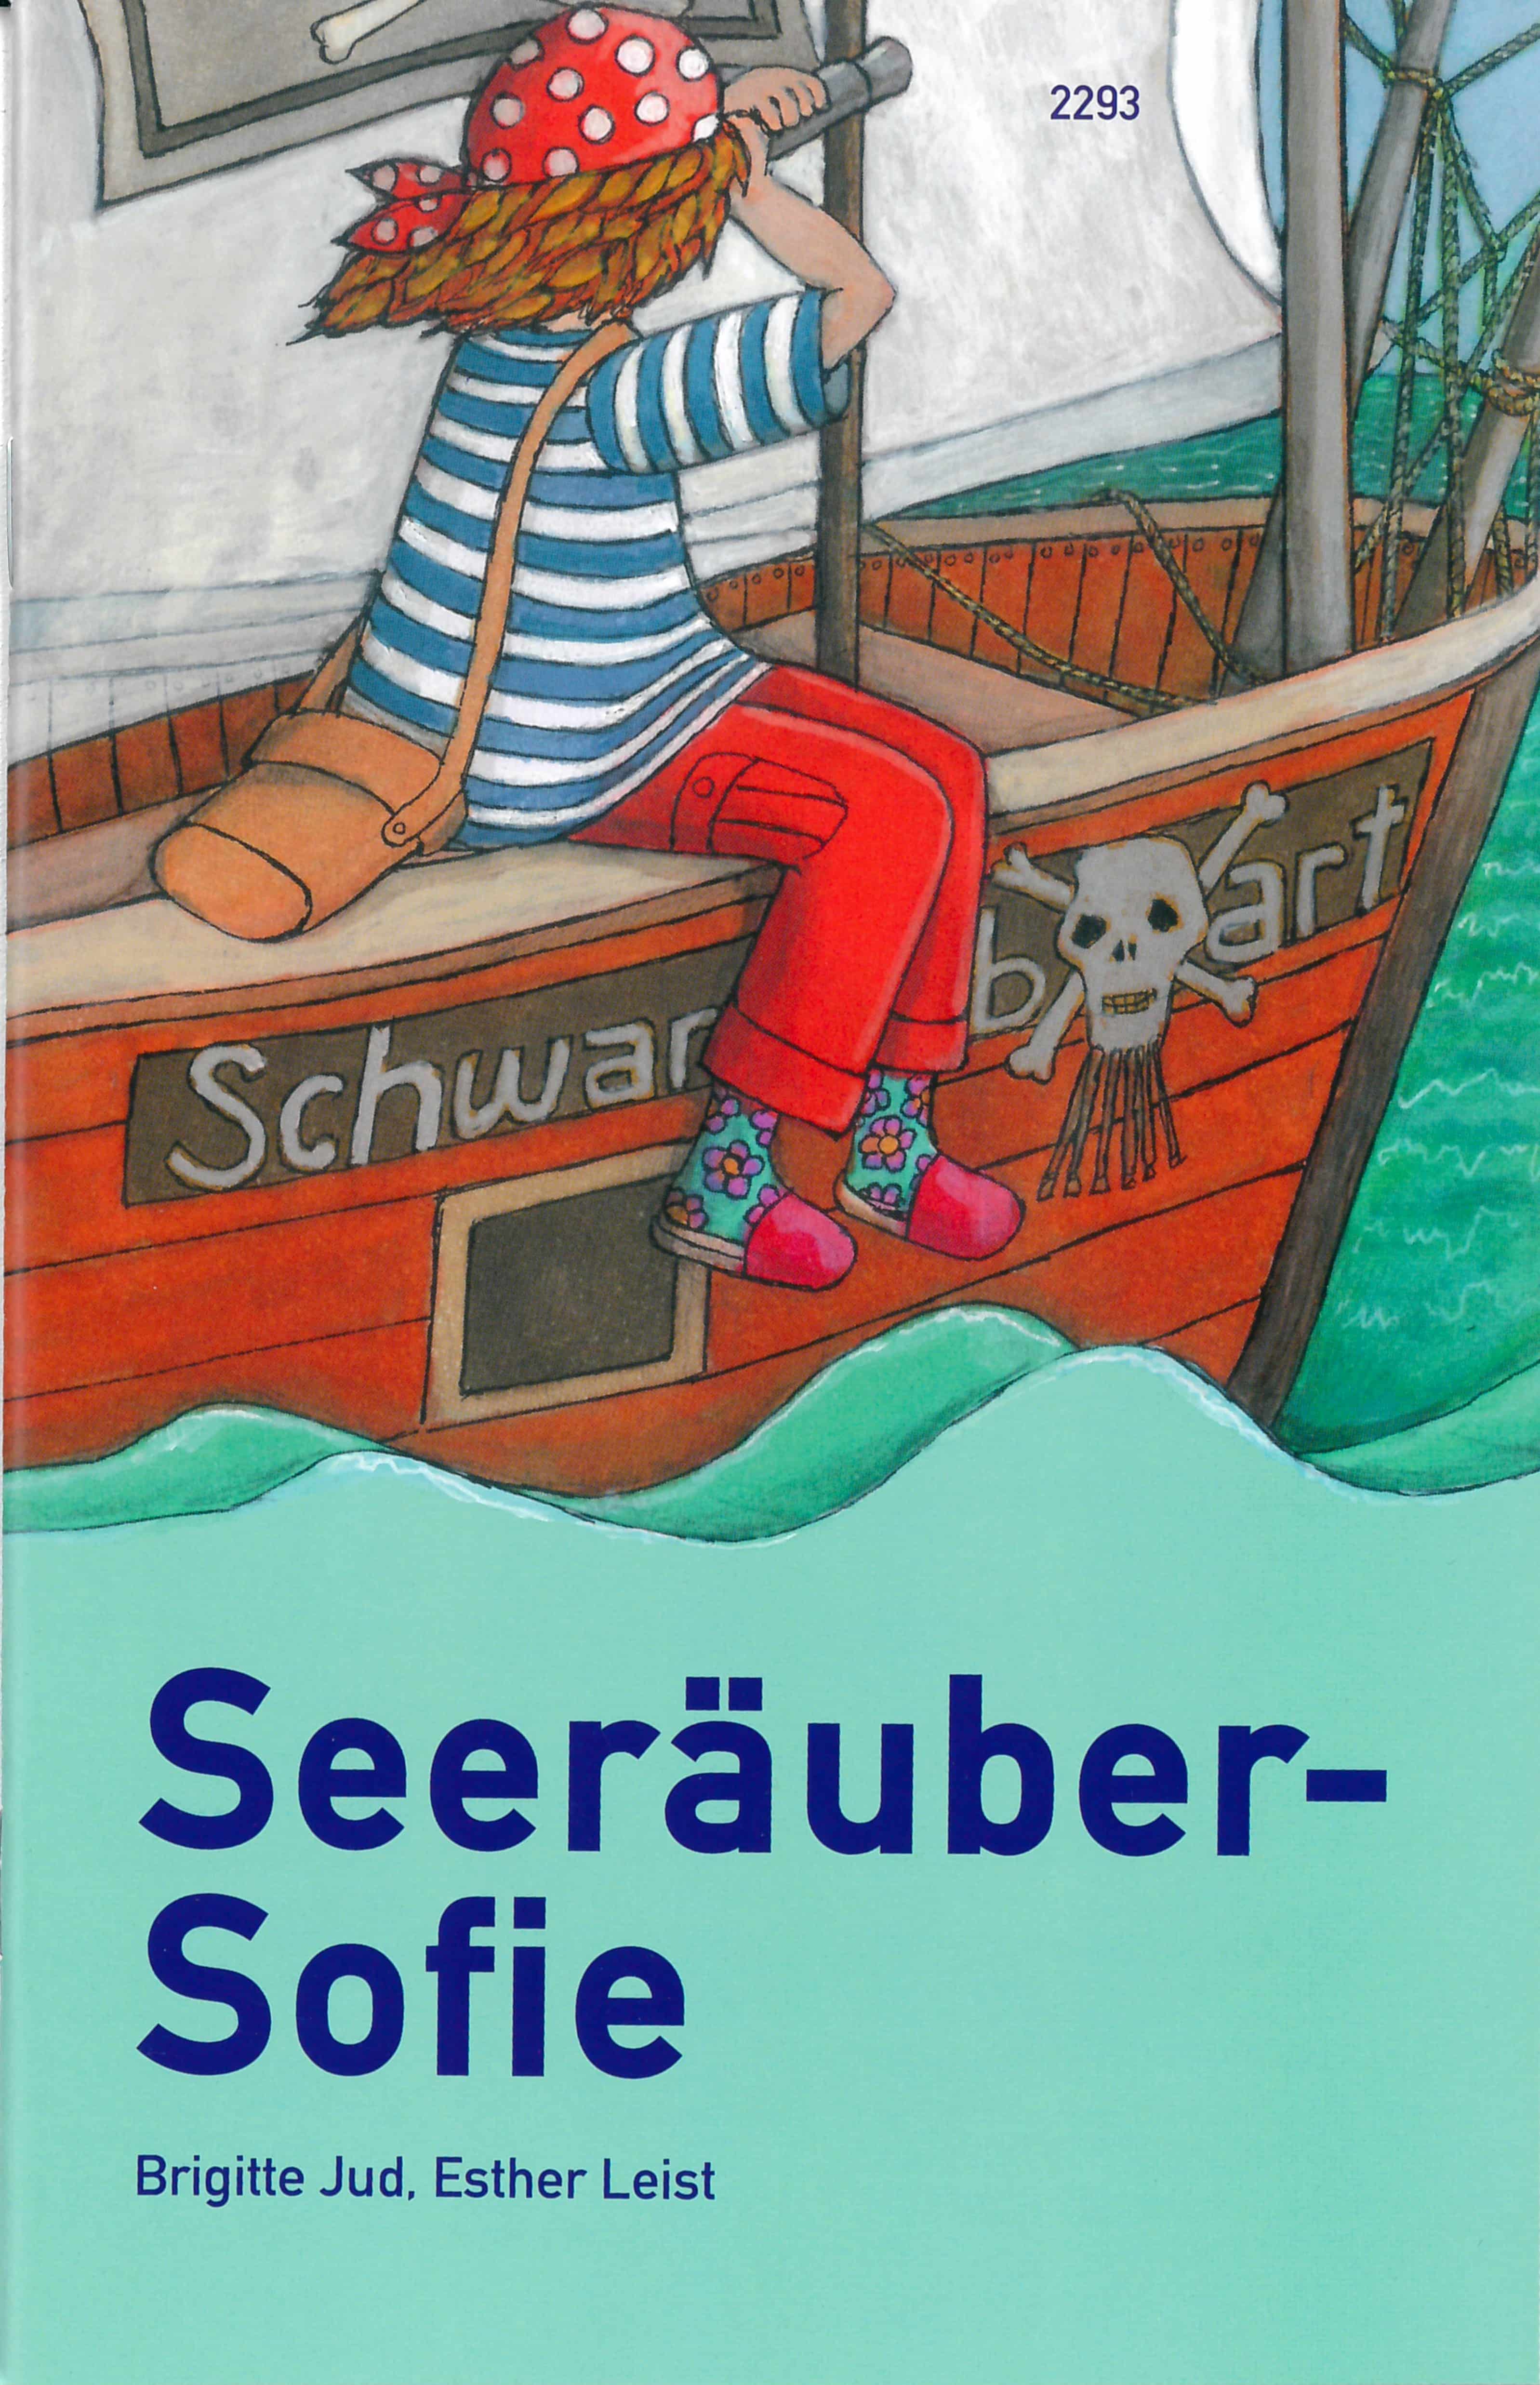 Seeraeuber-Sofie, ein Kinderbuch von Brigitte Jud, Illustration von Esther Leist, SJW Verlag, Piratengeschichte